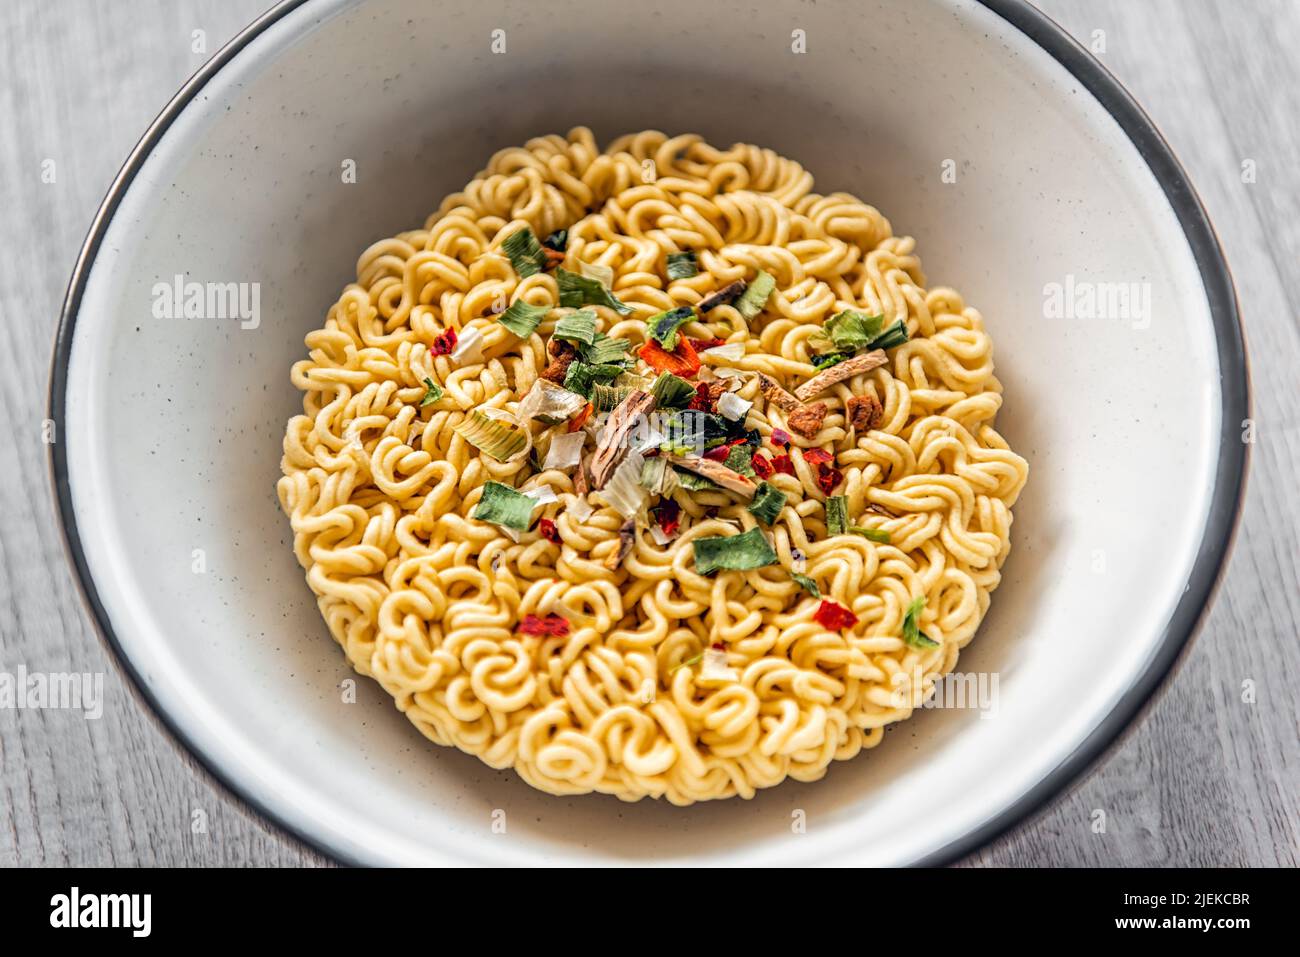 Primer plano de sopa instantánea de fideos rojos picantes y secos en un recipiente como comida asiática japonesa con textura de pasta cruda sin cocinar y aderezos de cebolla verde Foto de stock